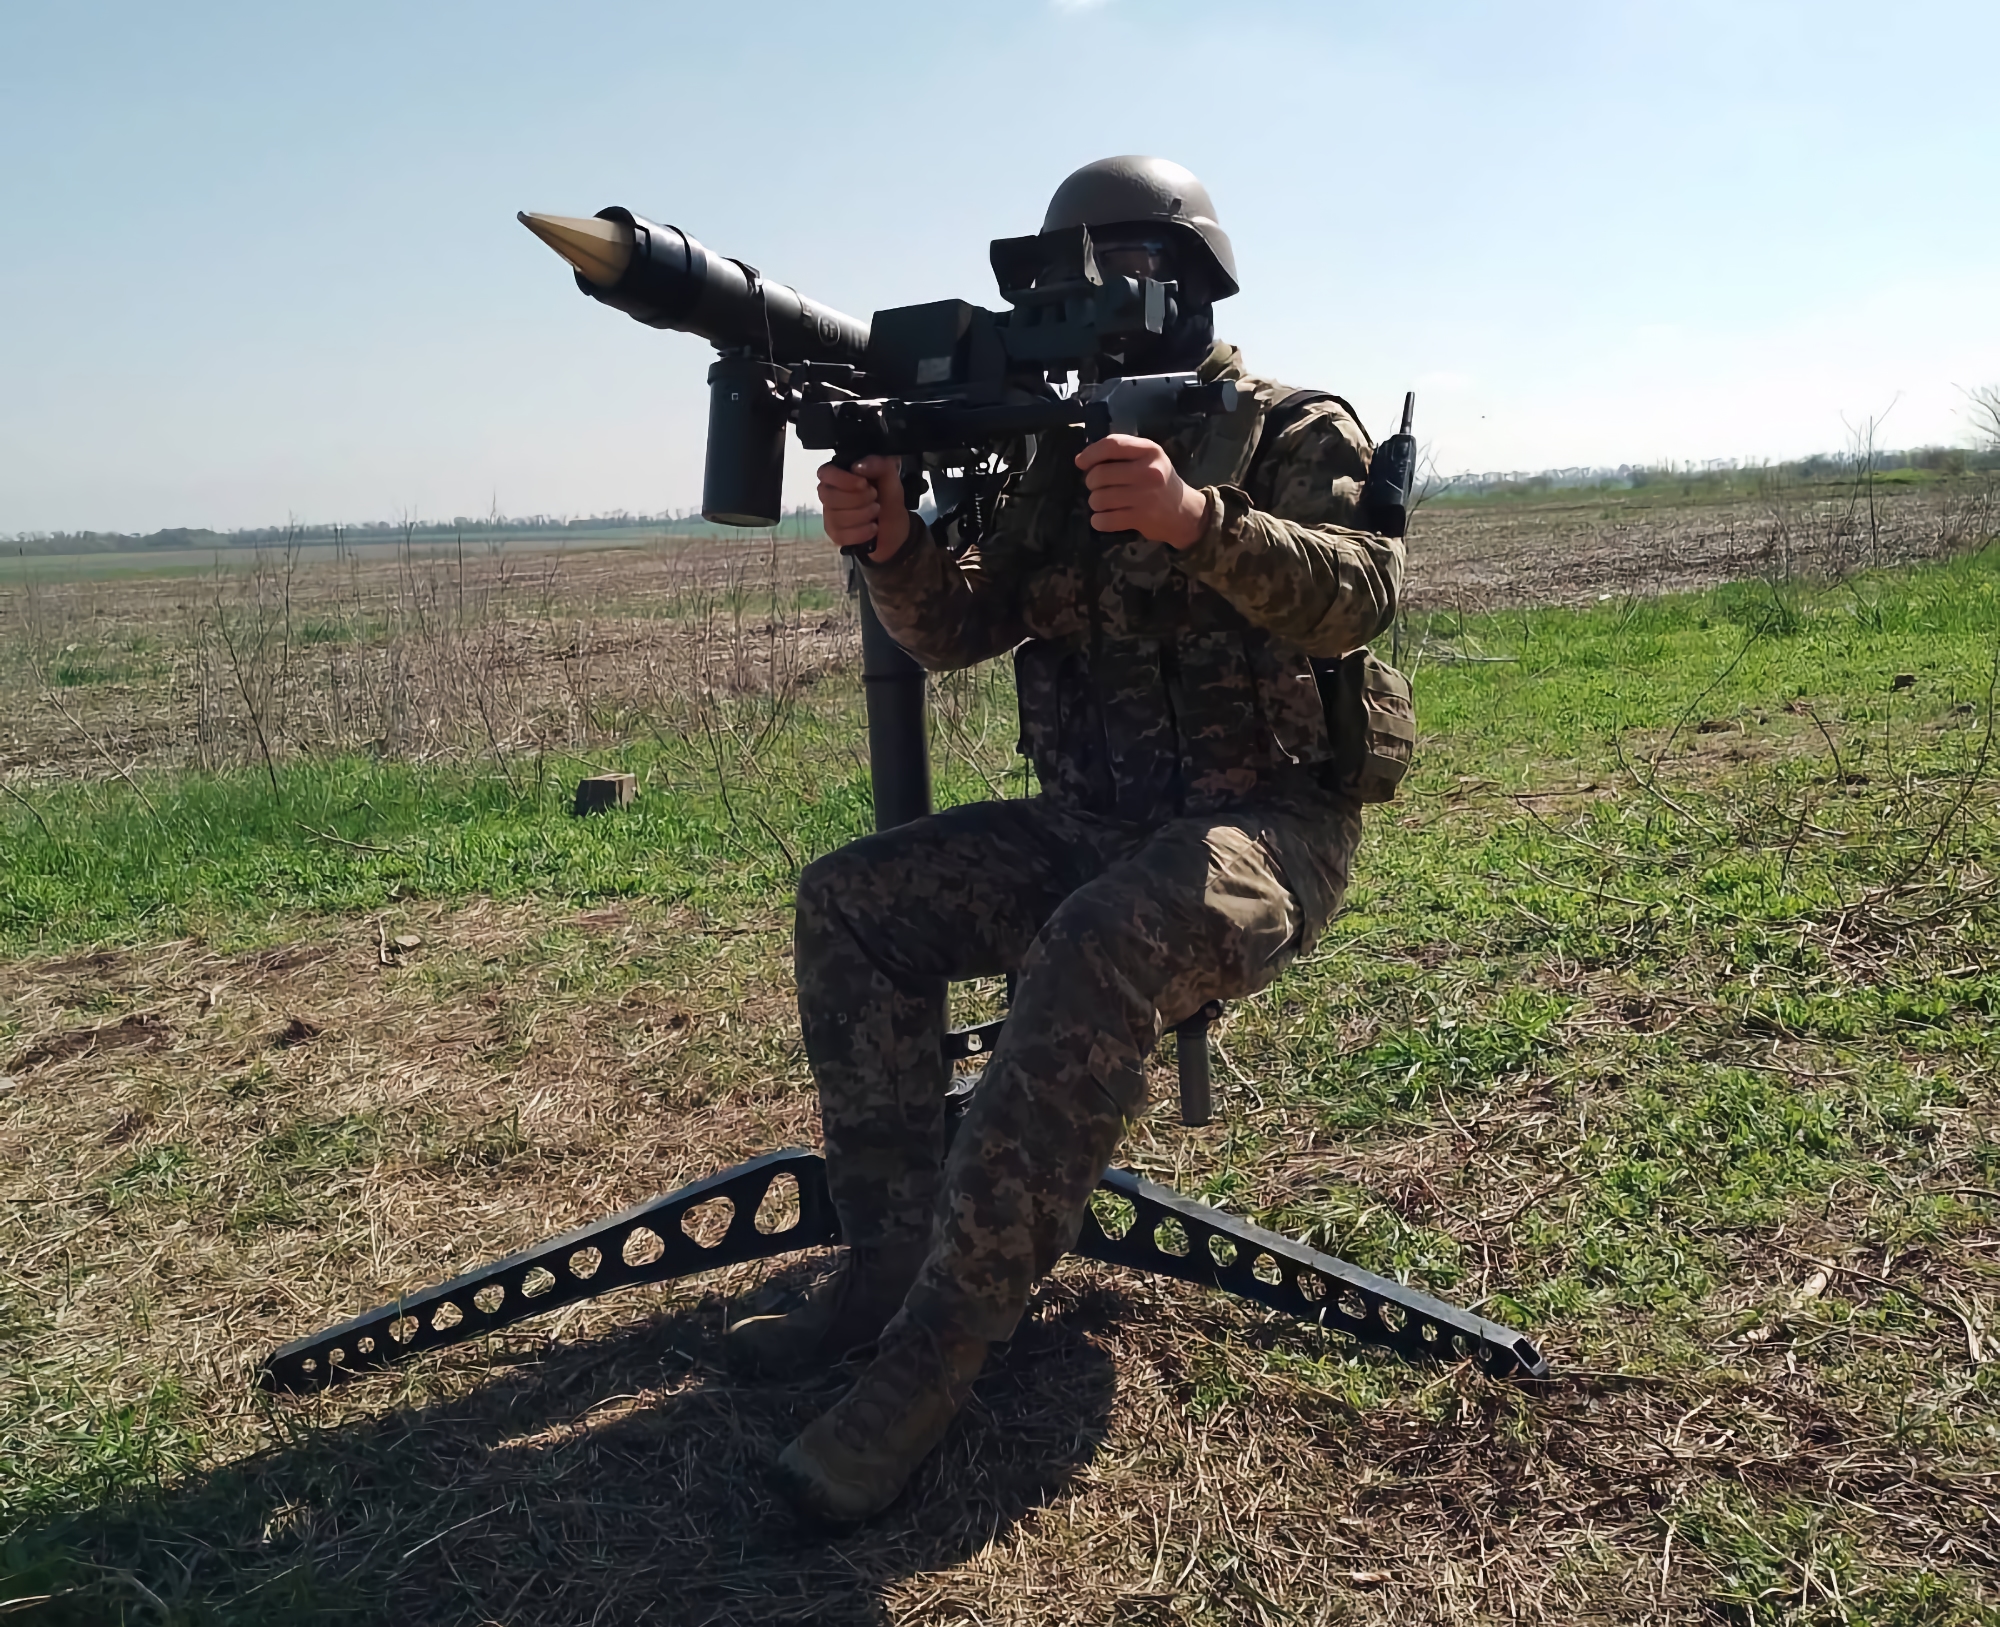 Le forze armate dell'Ucraina hanno iniziato a utilizzare Mistral MANPADS, che sono il limite per noi Norvegia